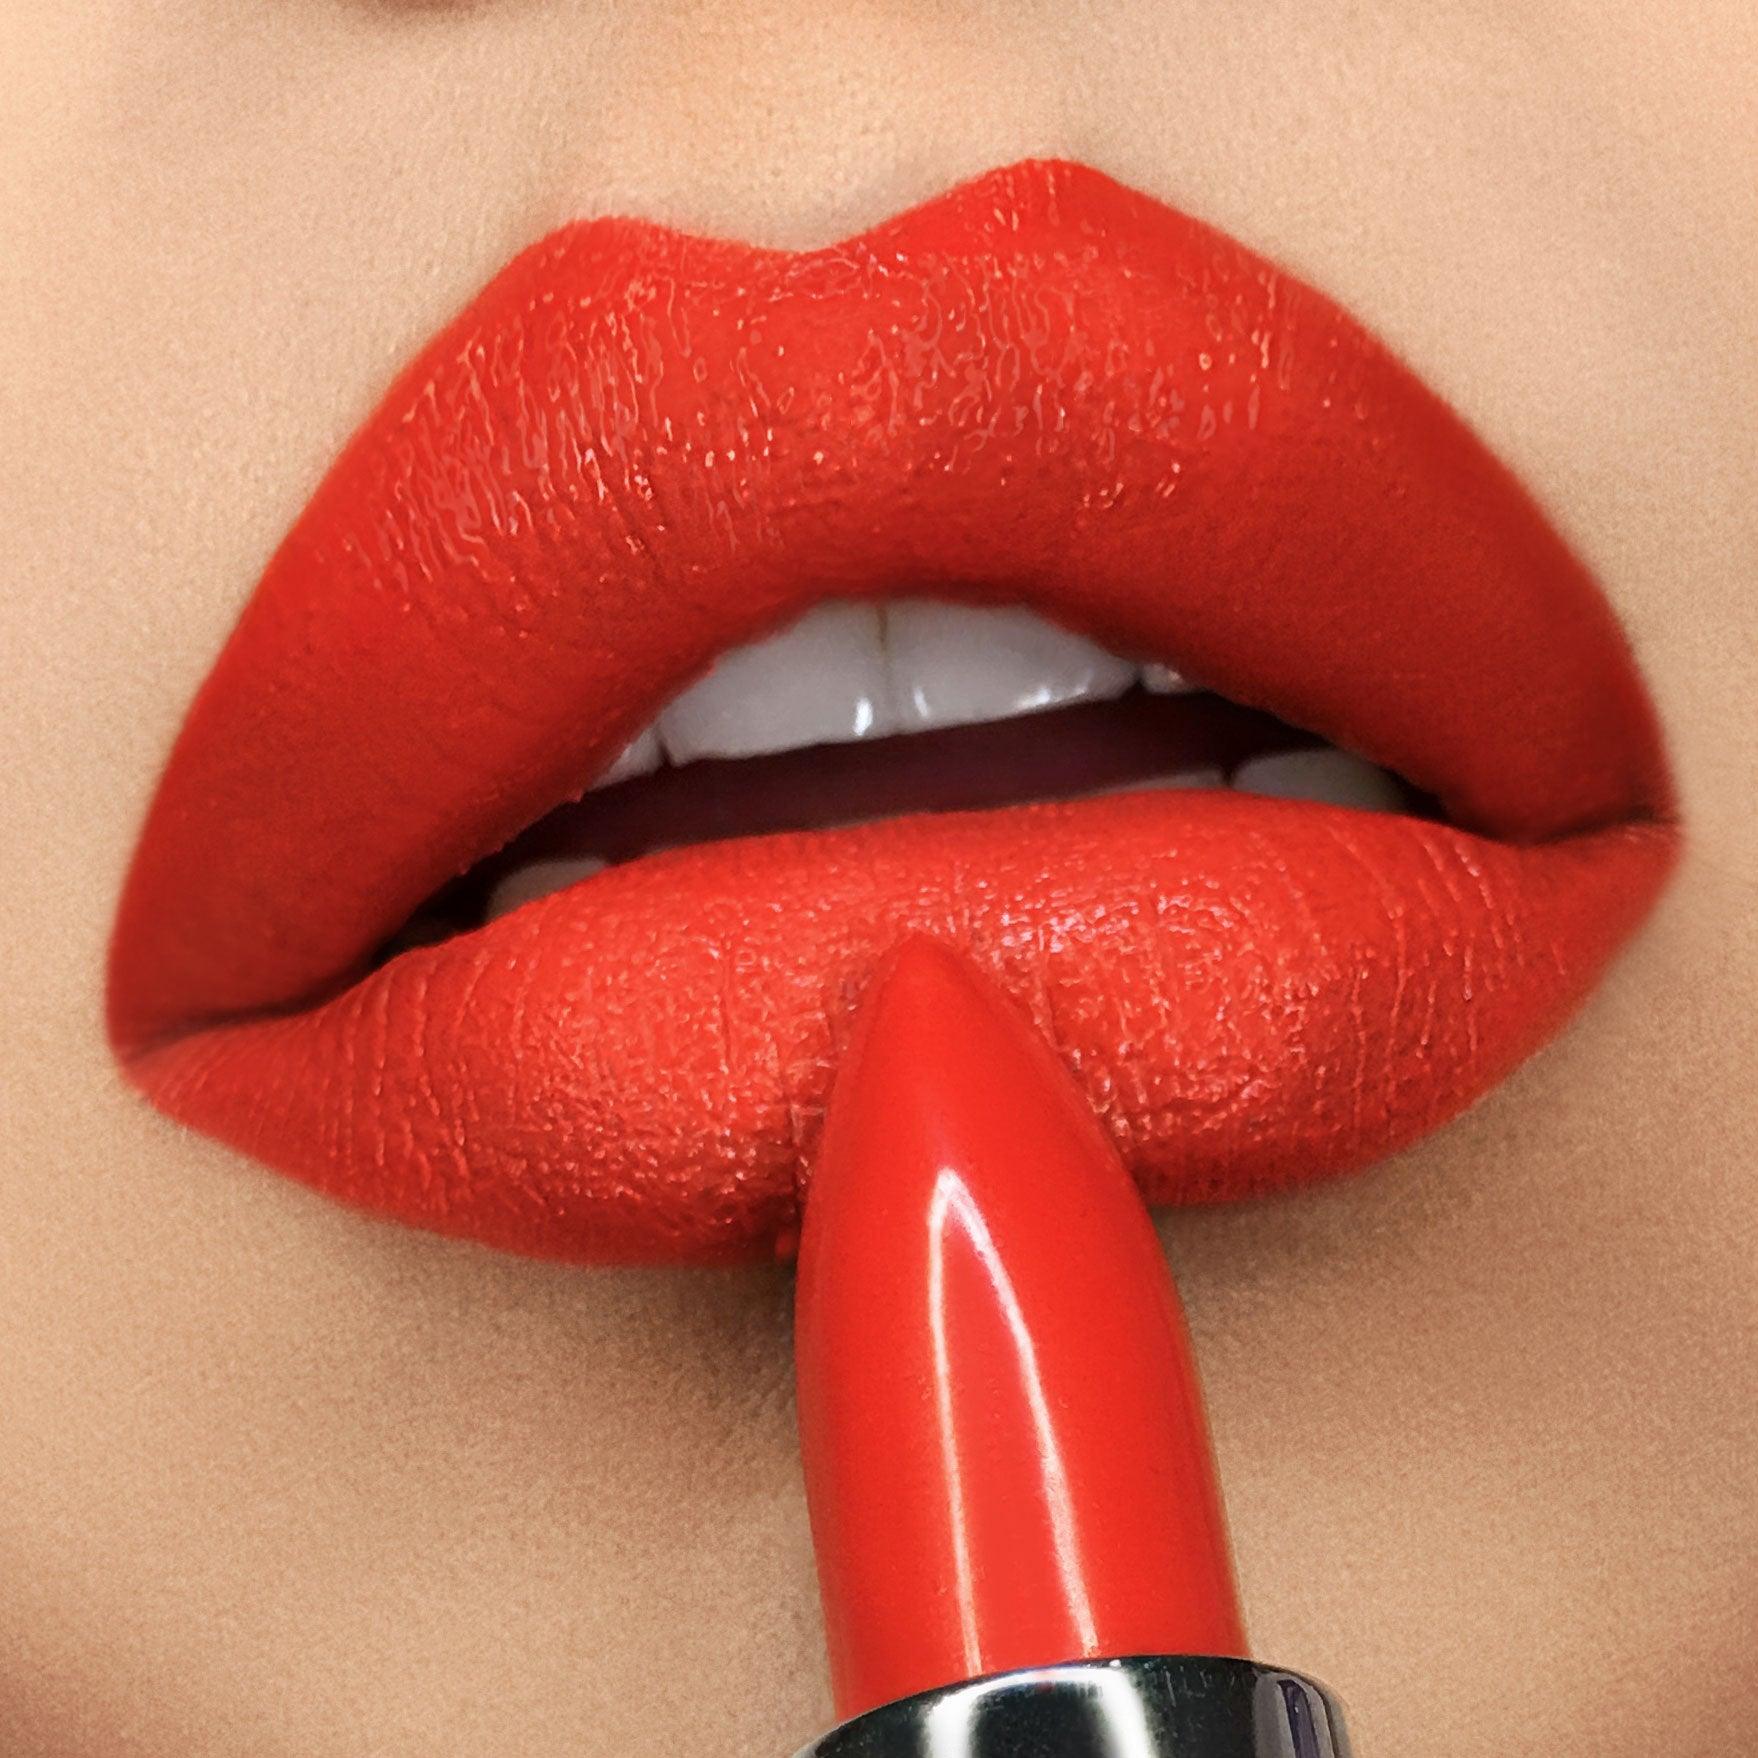 Stilettos, Bright Red Lipstick